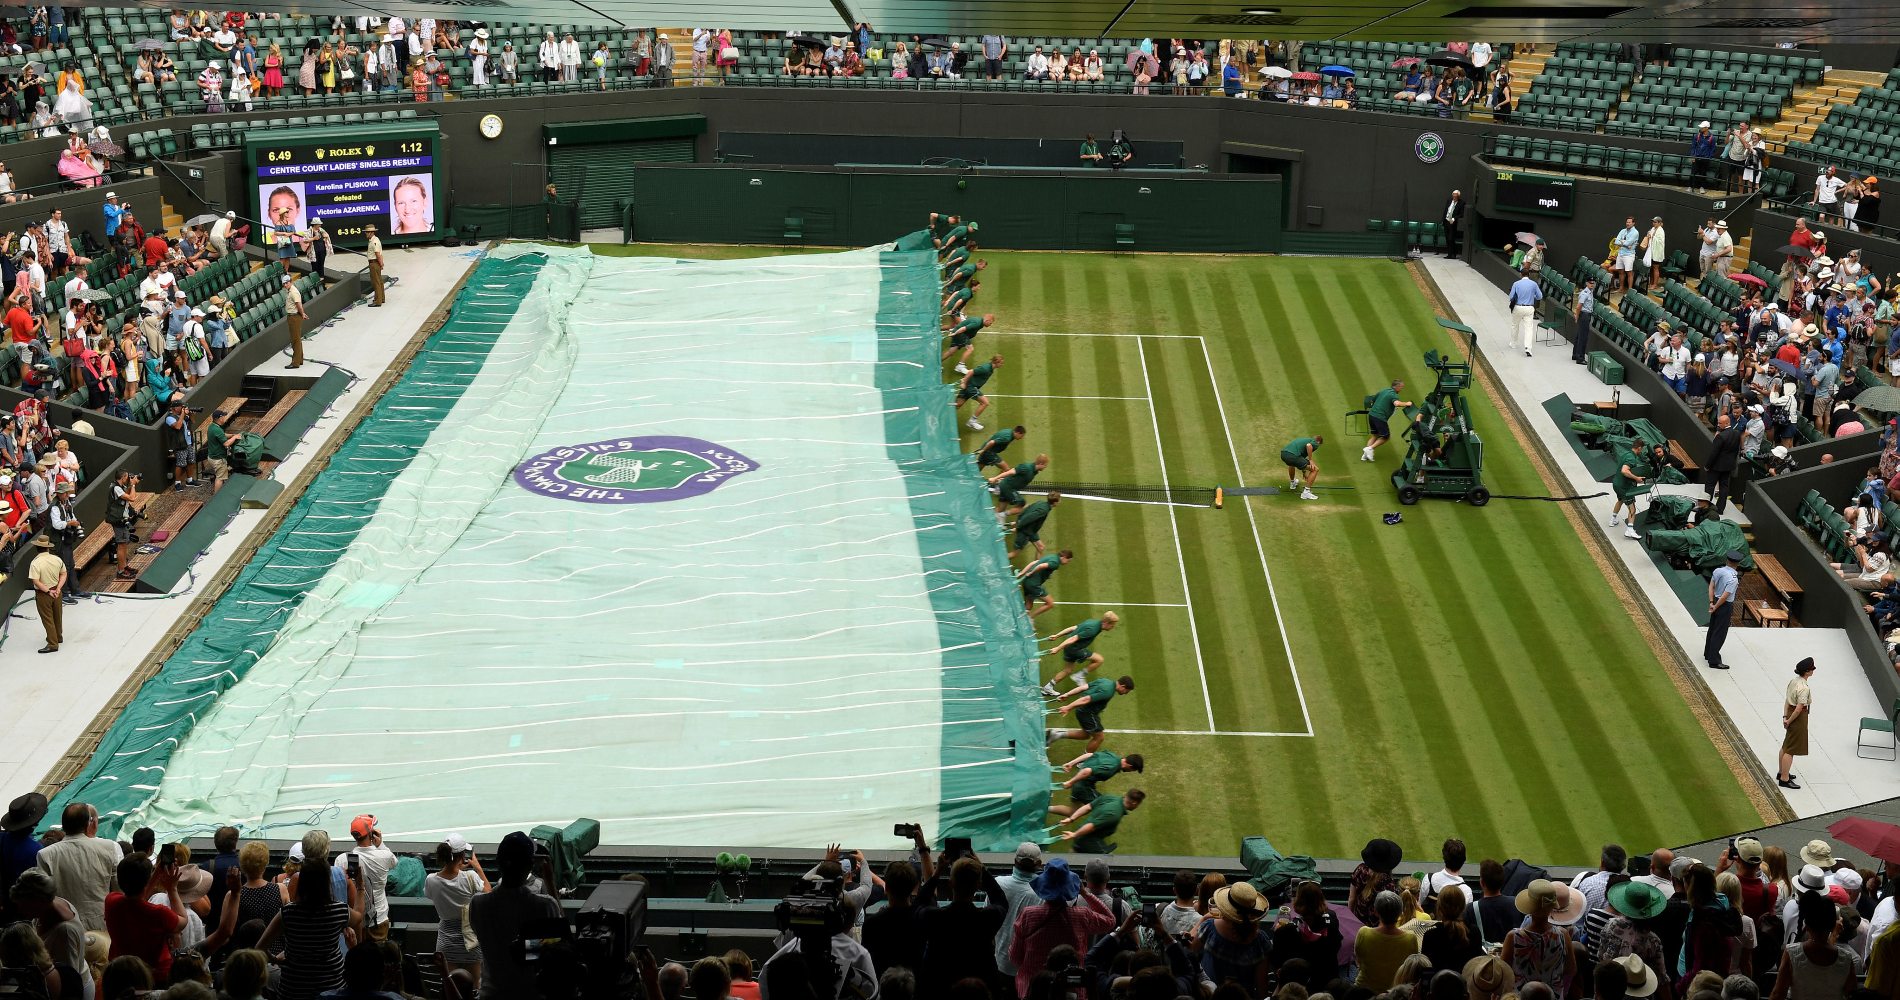 Ball boys covering Wimbledon Centre court